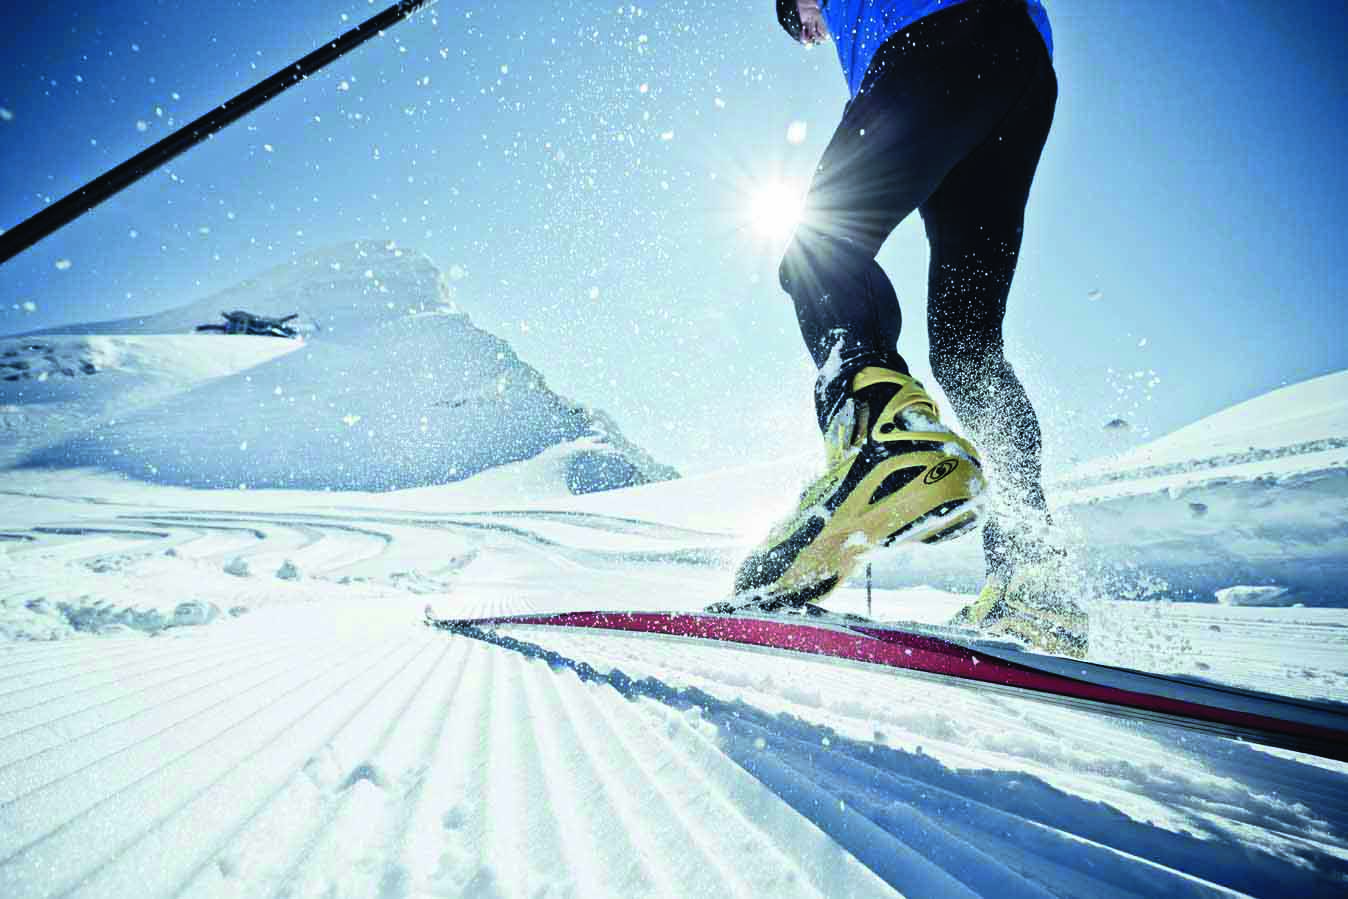 langlaufen-auf-dem-gletscher_cross-country-skiing-on-the-glacier_-c-ideenwerk-werbeagentur-gmbh